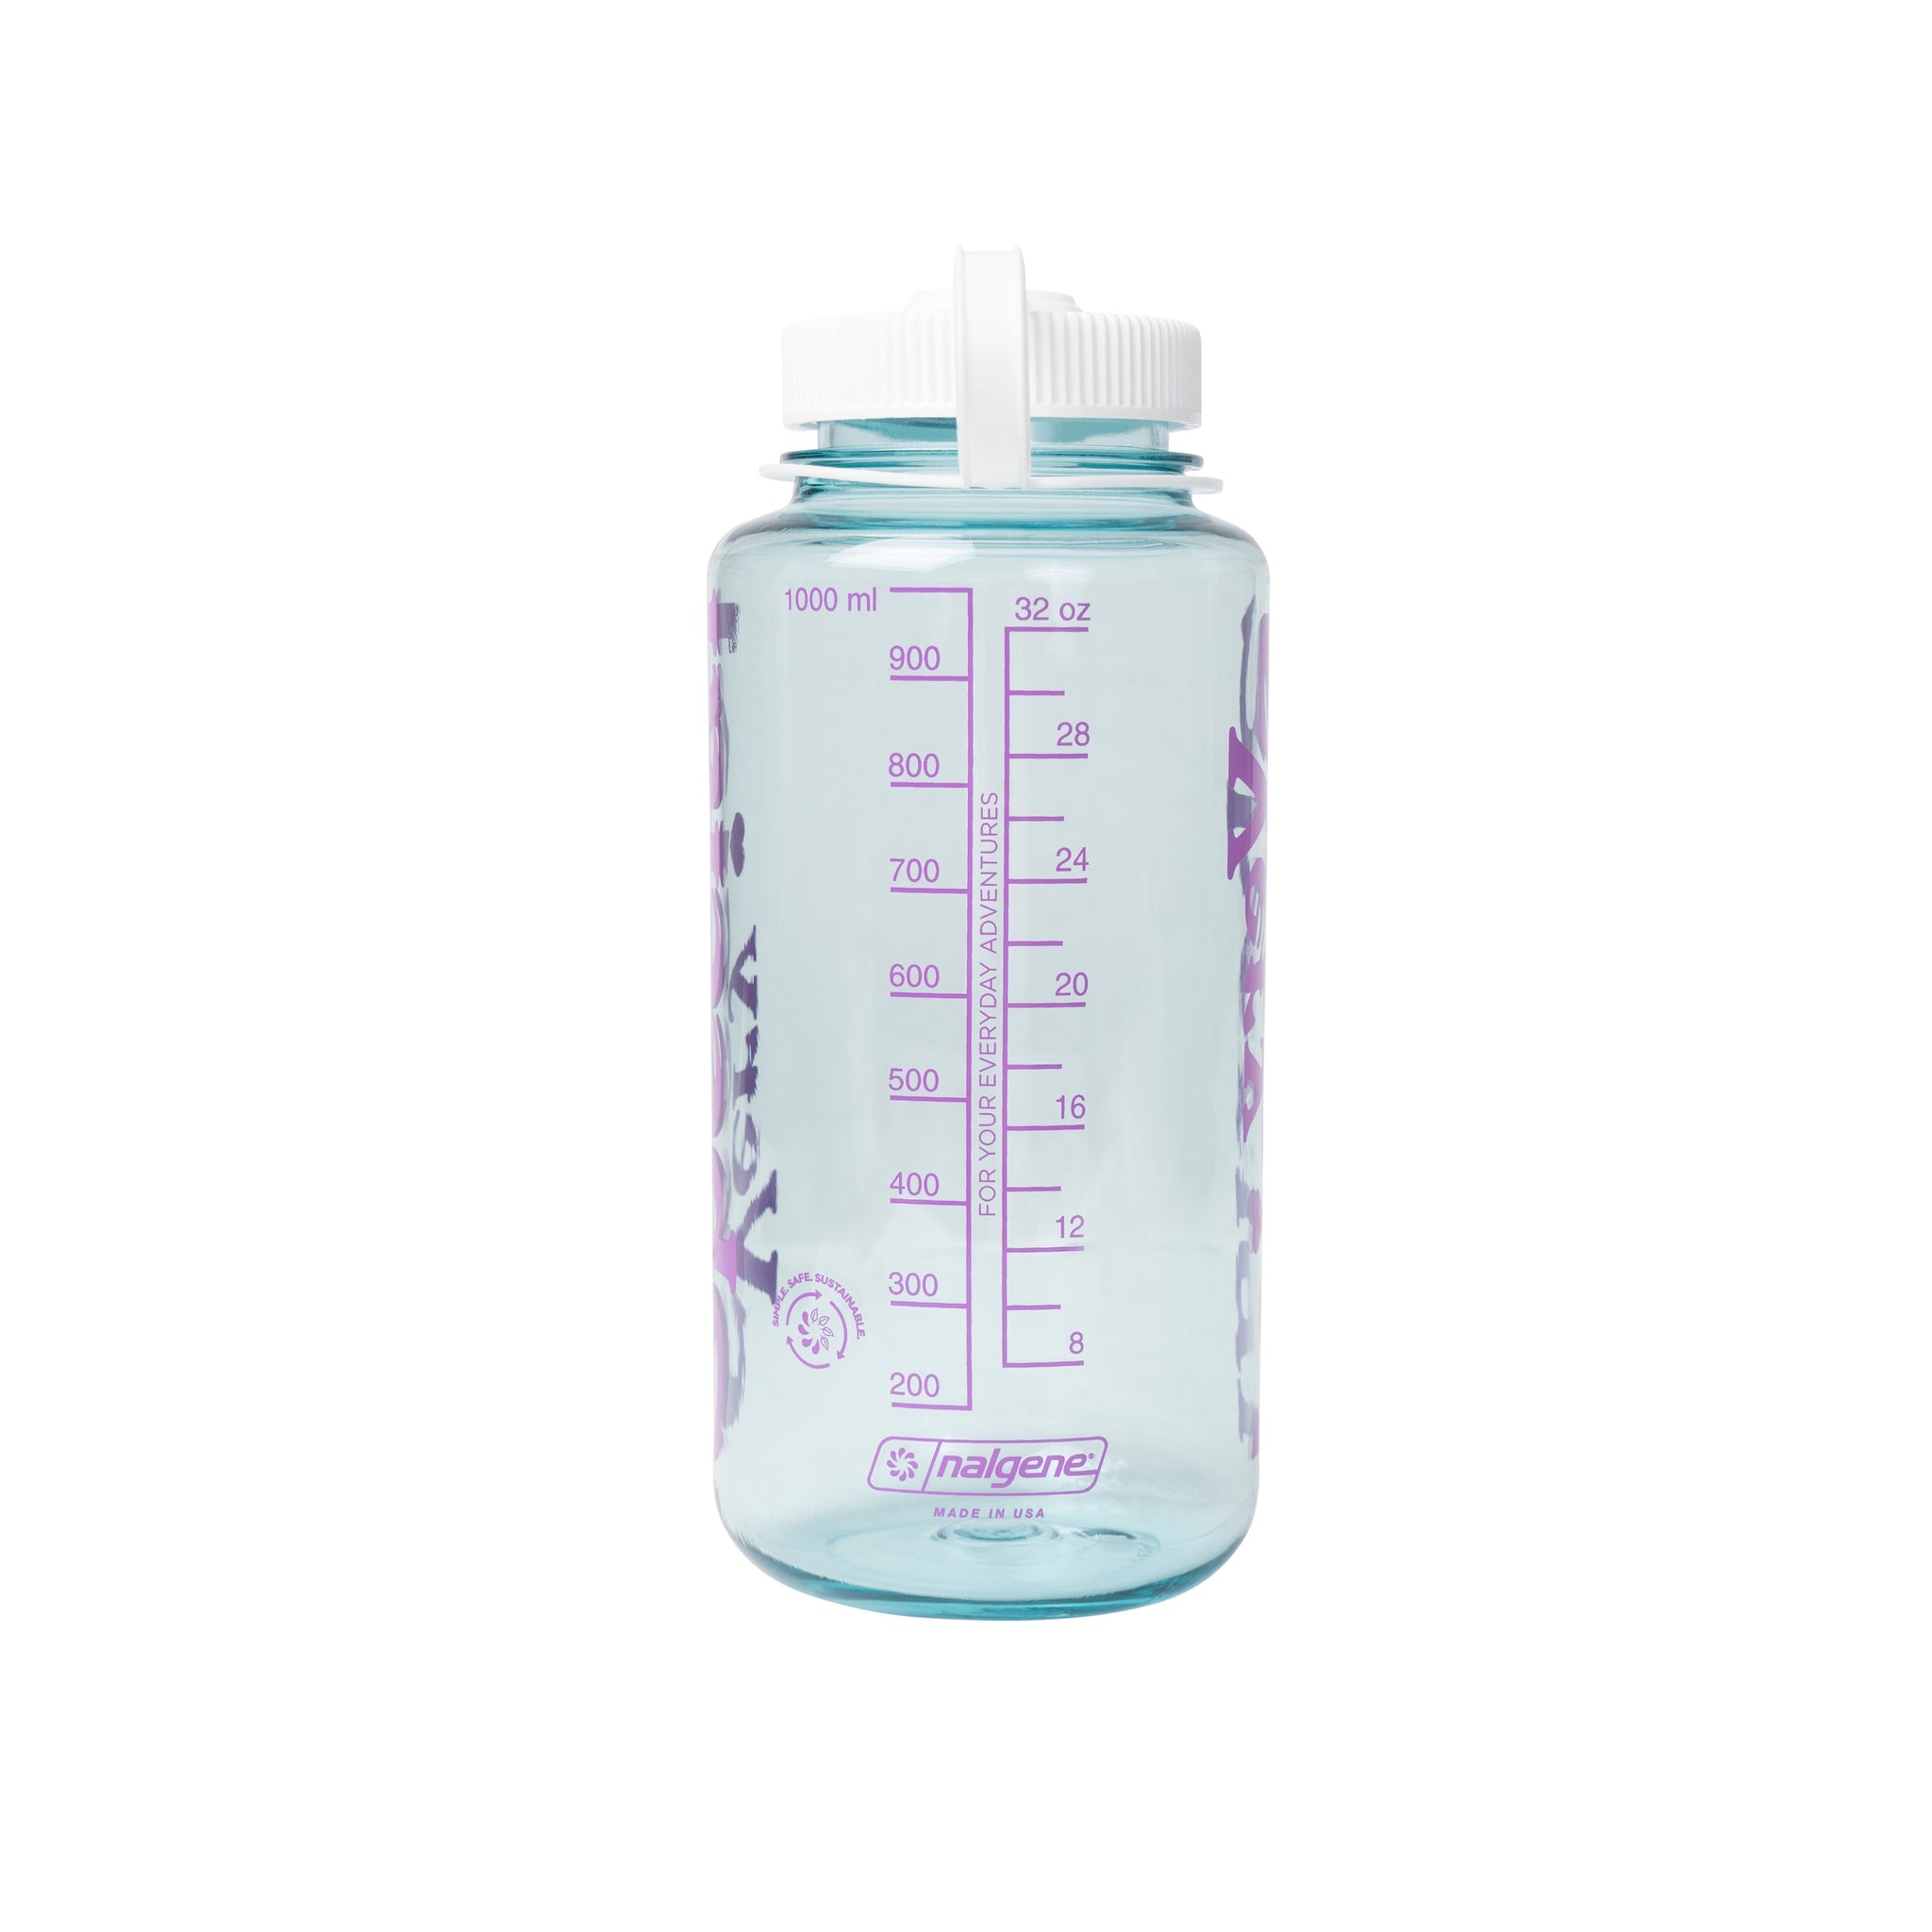 VS Nalgene Water Bottle